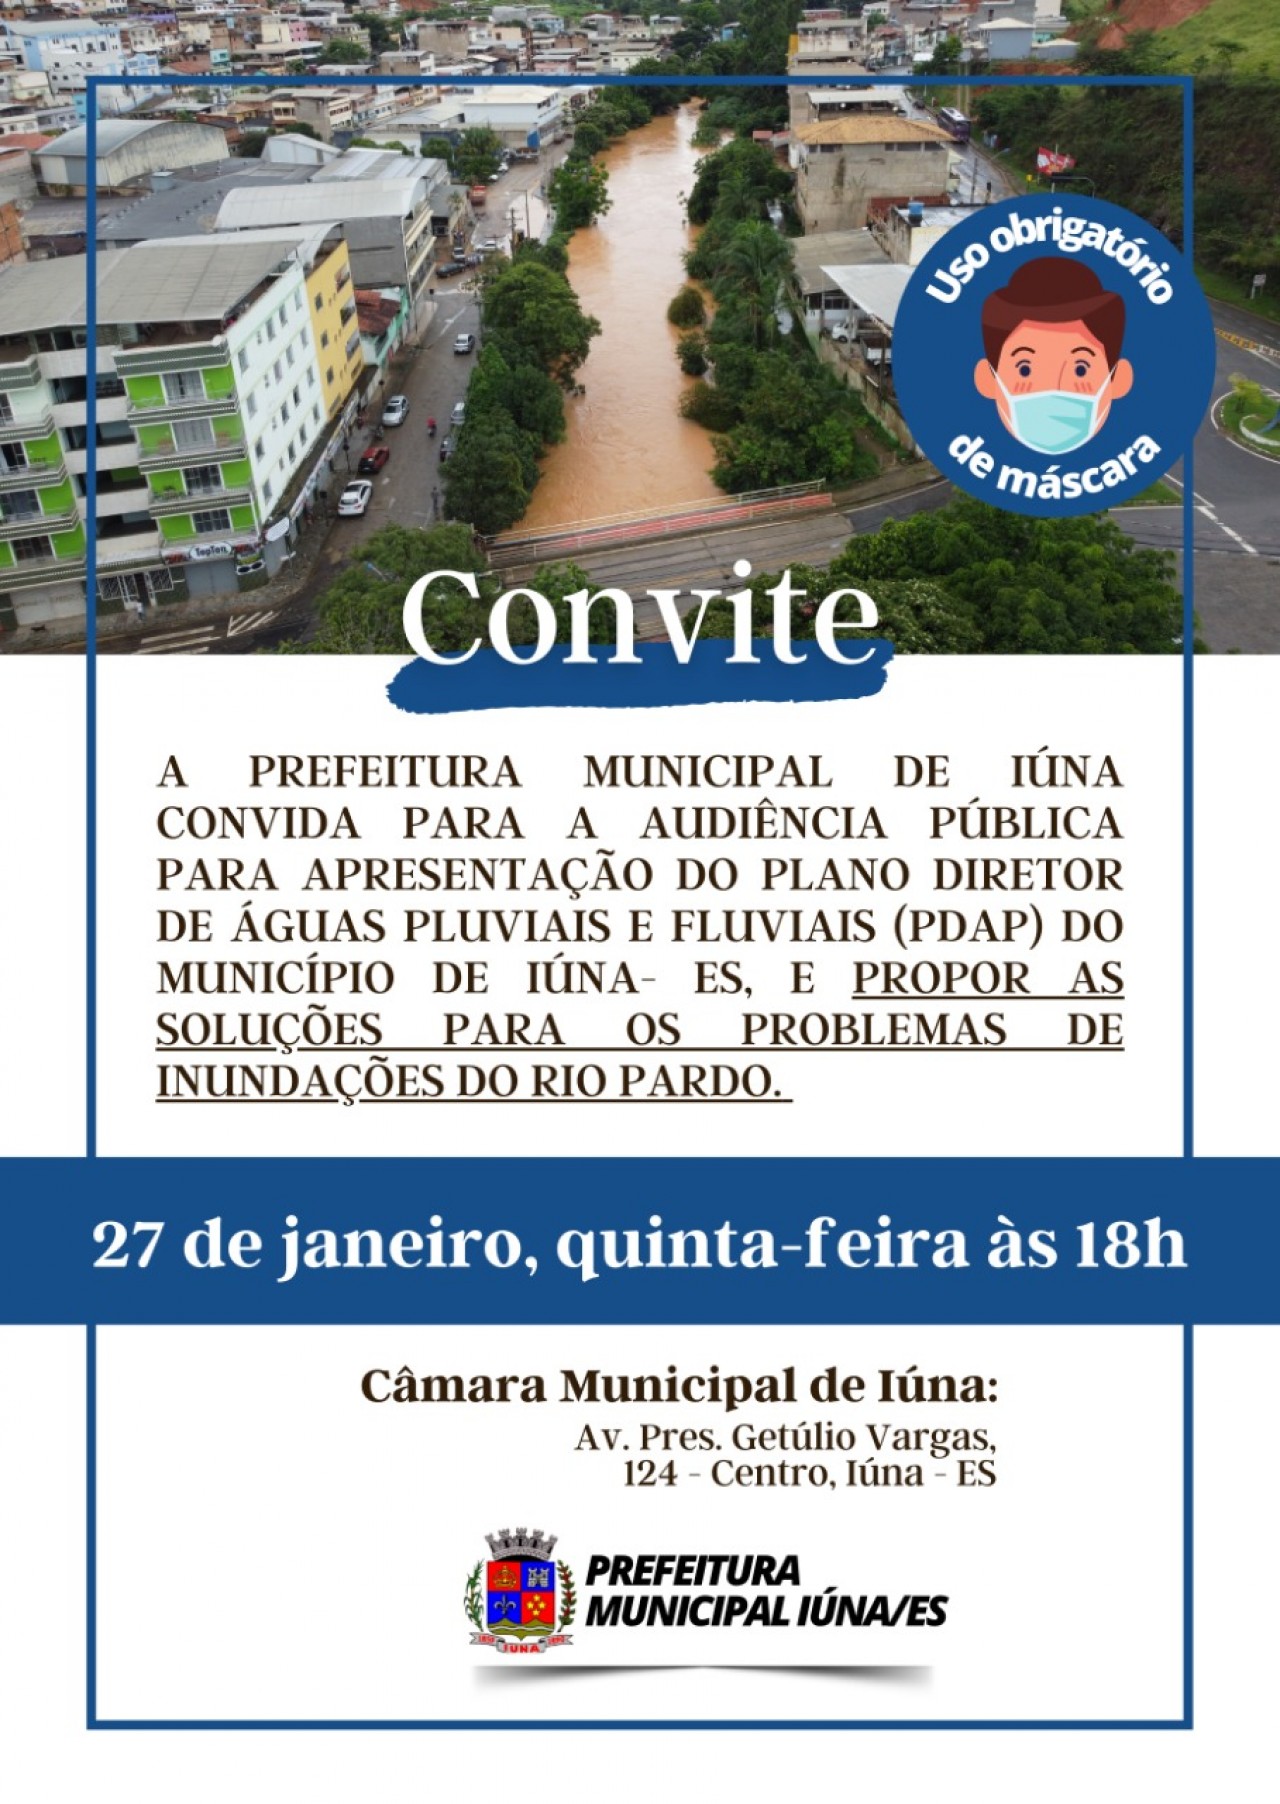 Audiência Pública para apresentar ação do plano diretor de àguas pluviais.